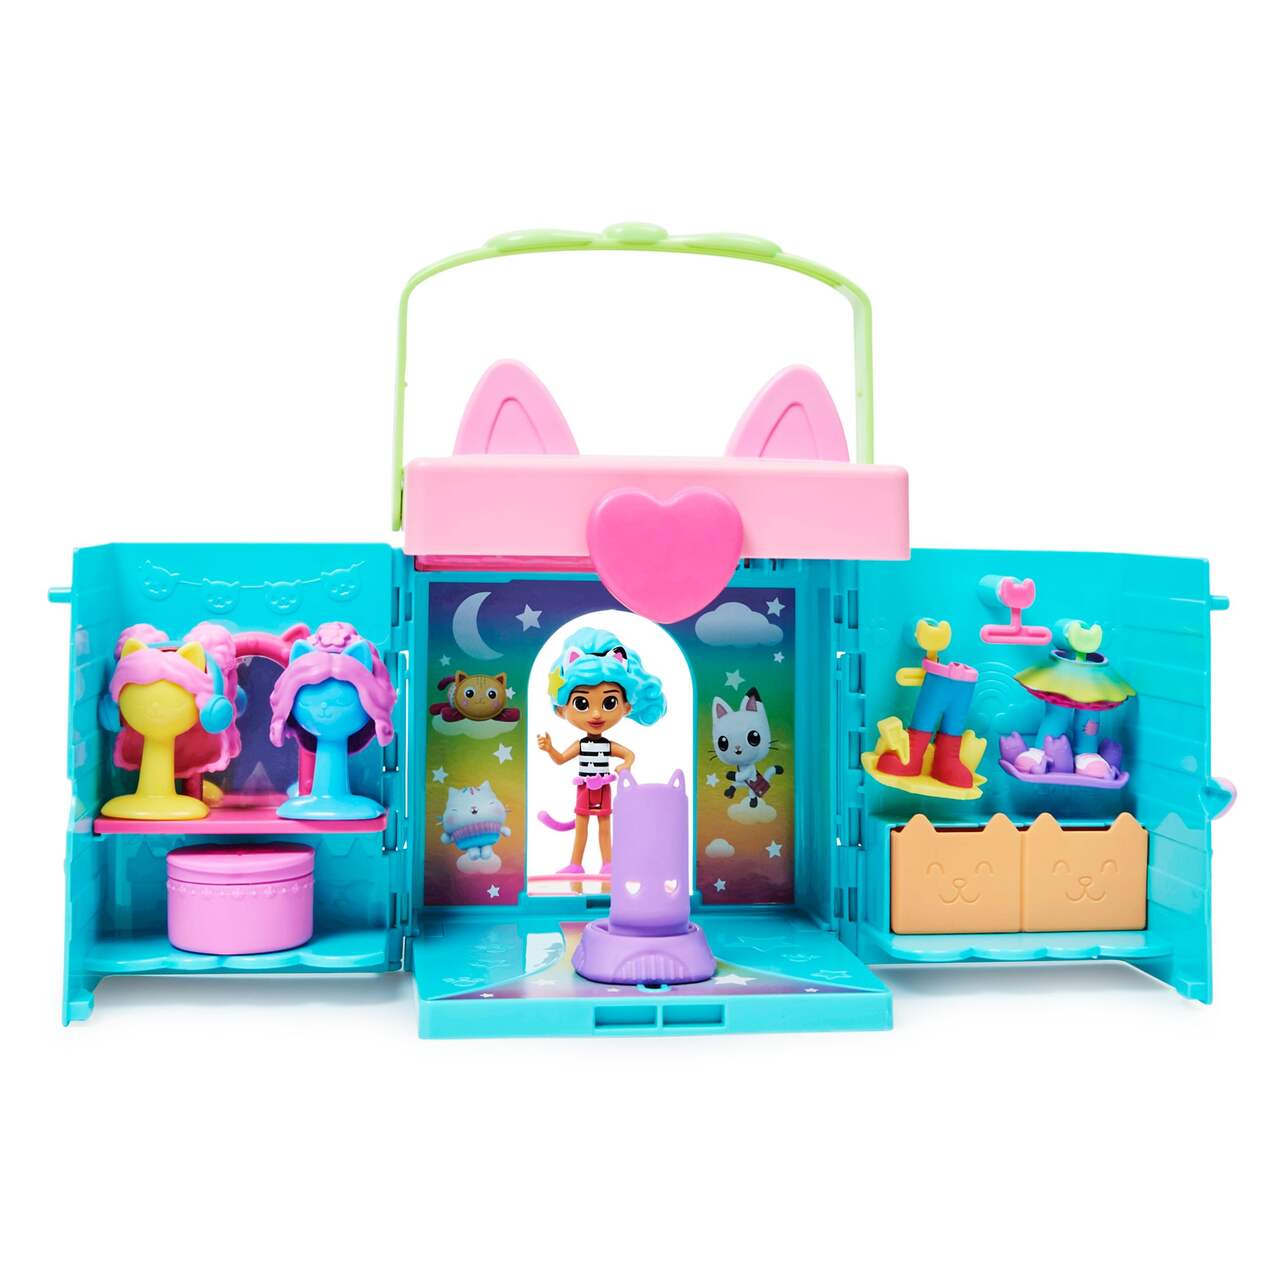 Gabby's Dollhouse, Coffret Art Studio avec 2 figurines jouets, 2  accessoires, boîte surprise et meuble, jouets pour enfants à partir de 3 ans